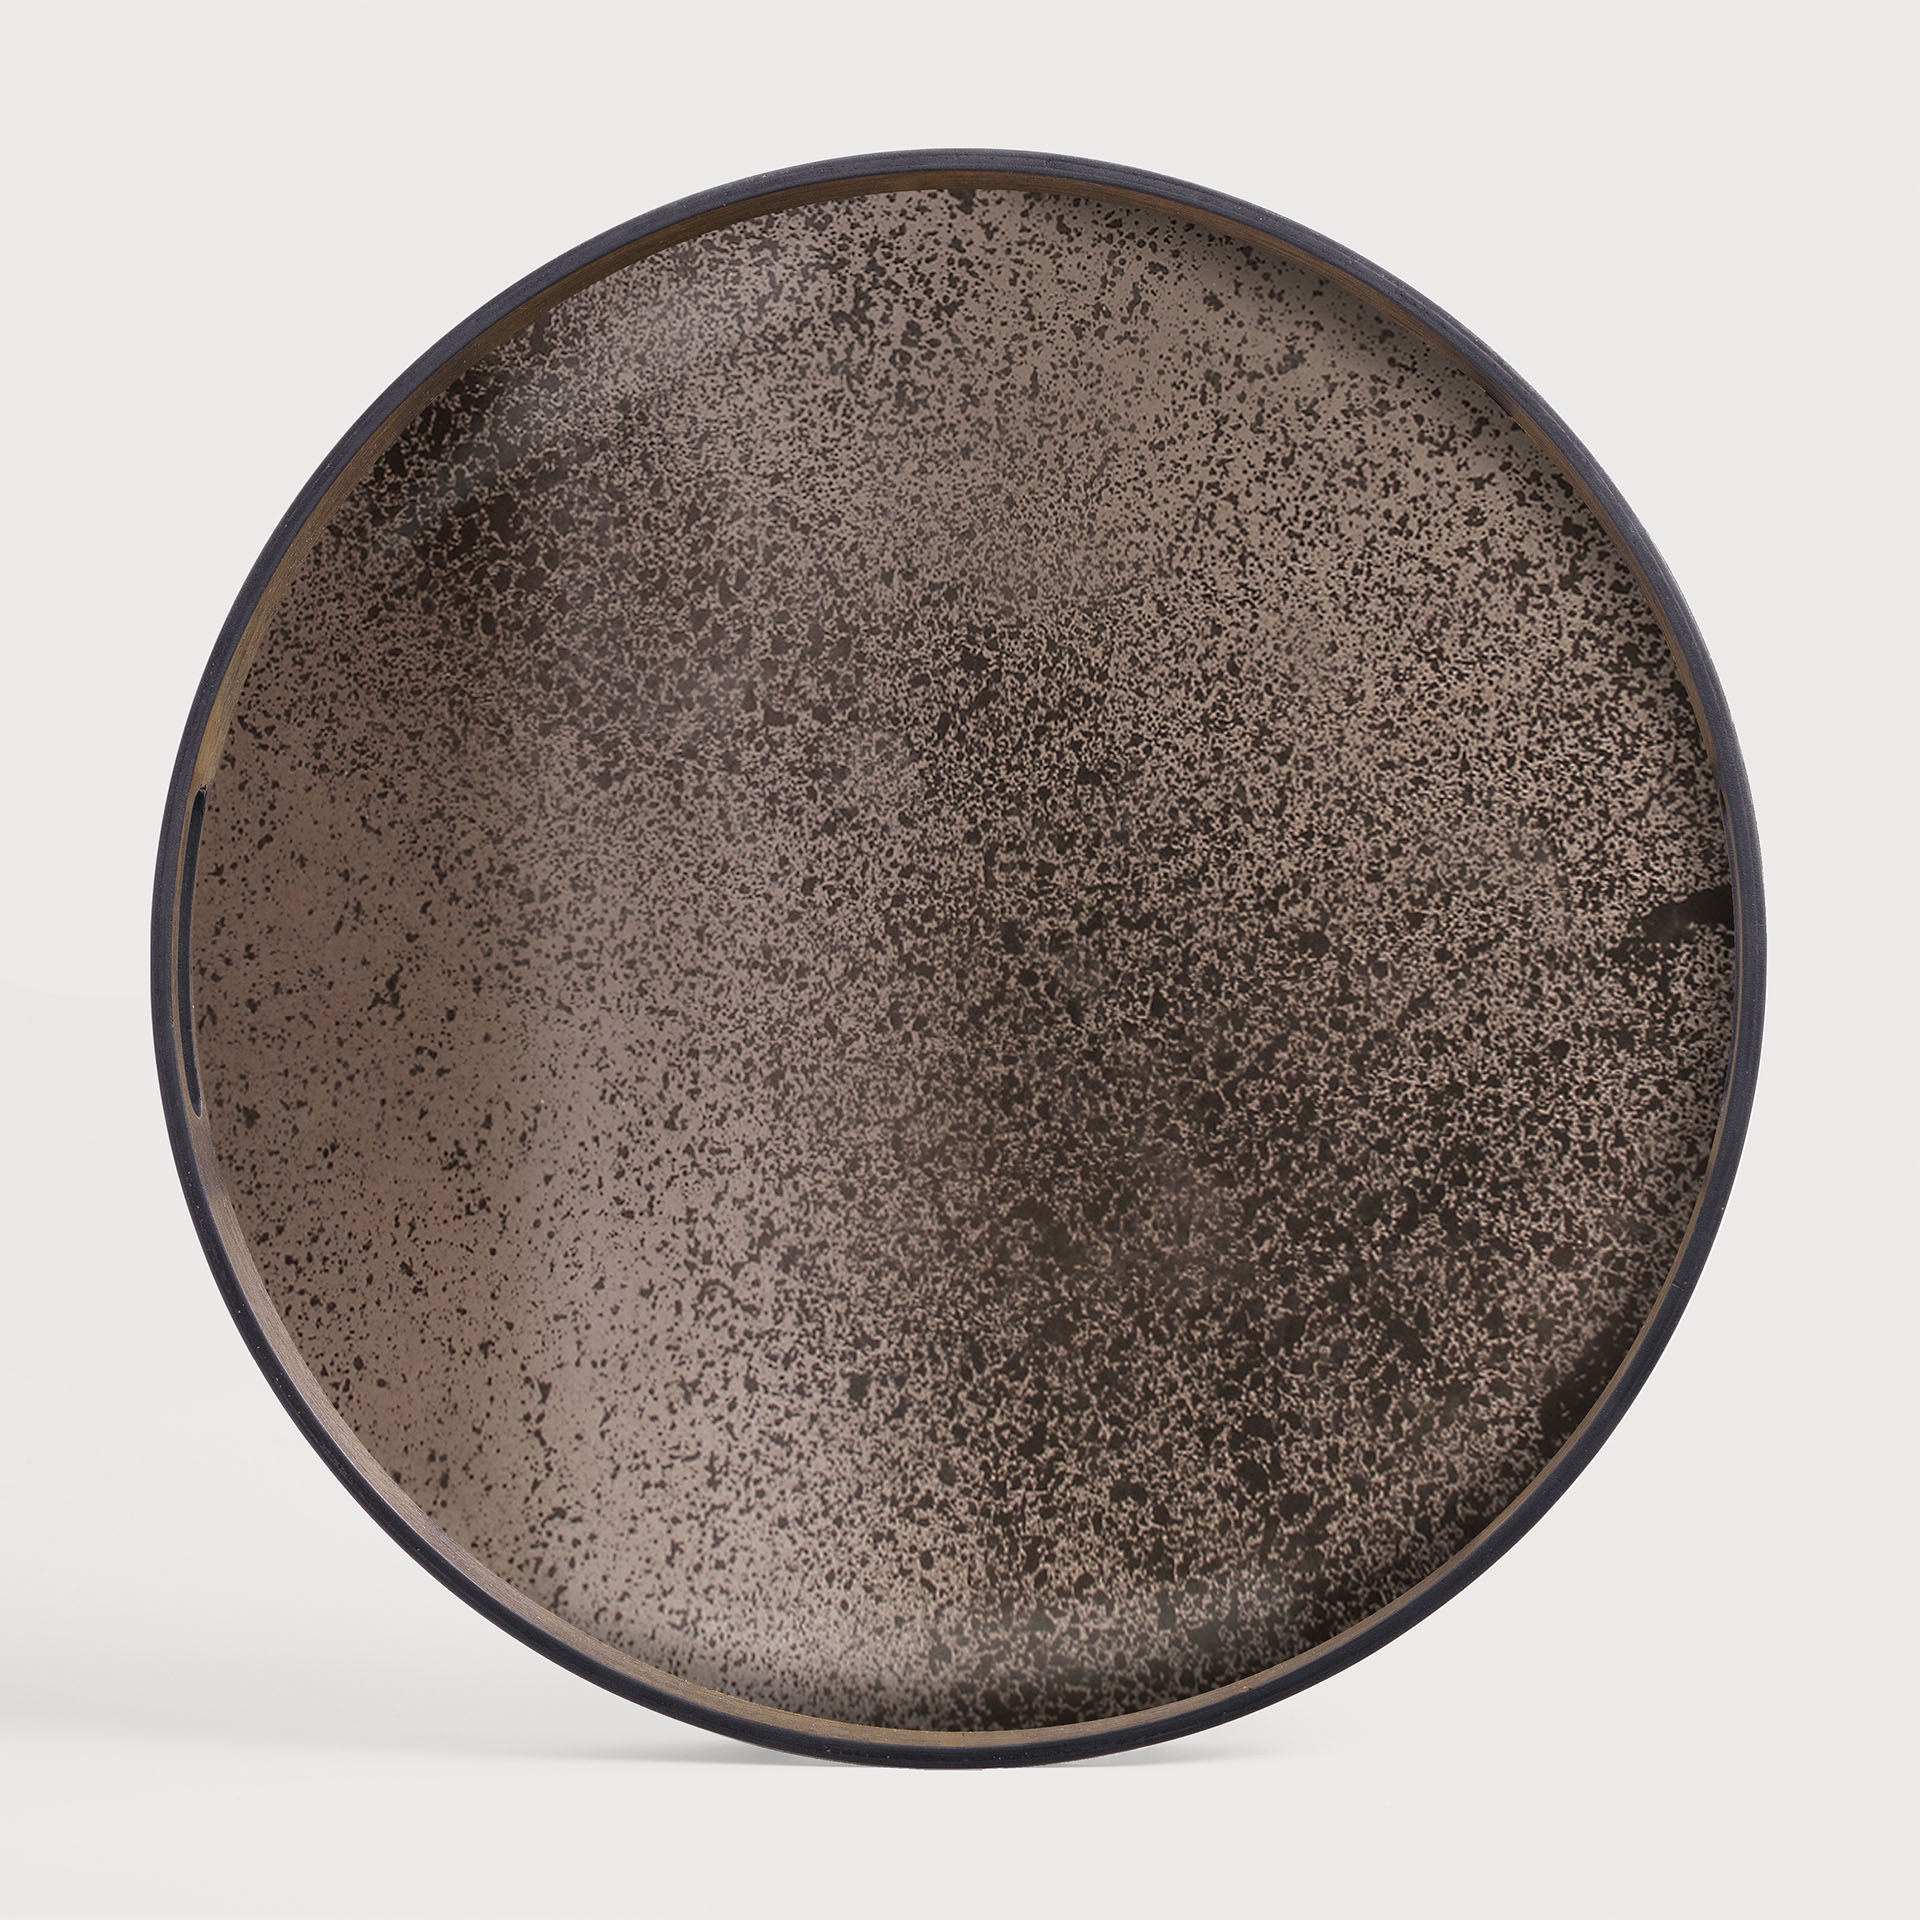 [20403*] Bronze mirror tray - round (48x48x4cm)